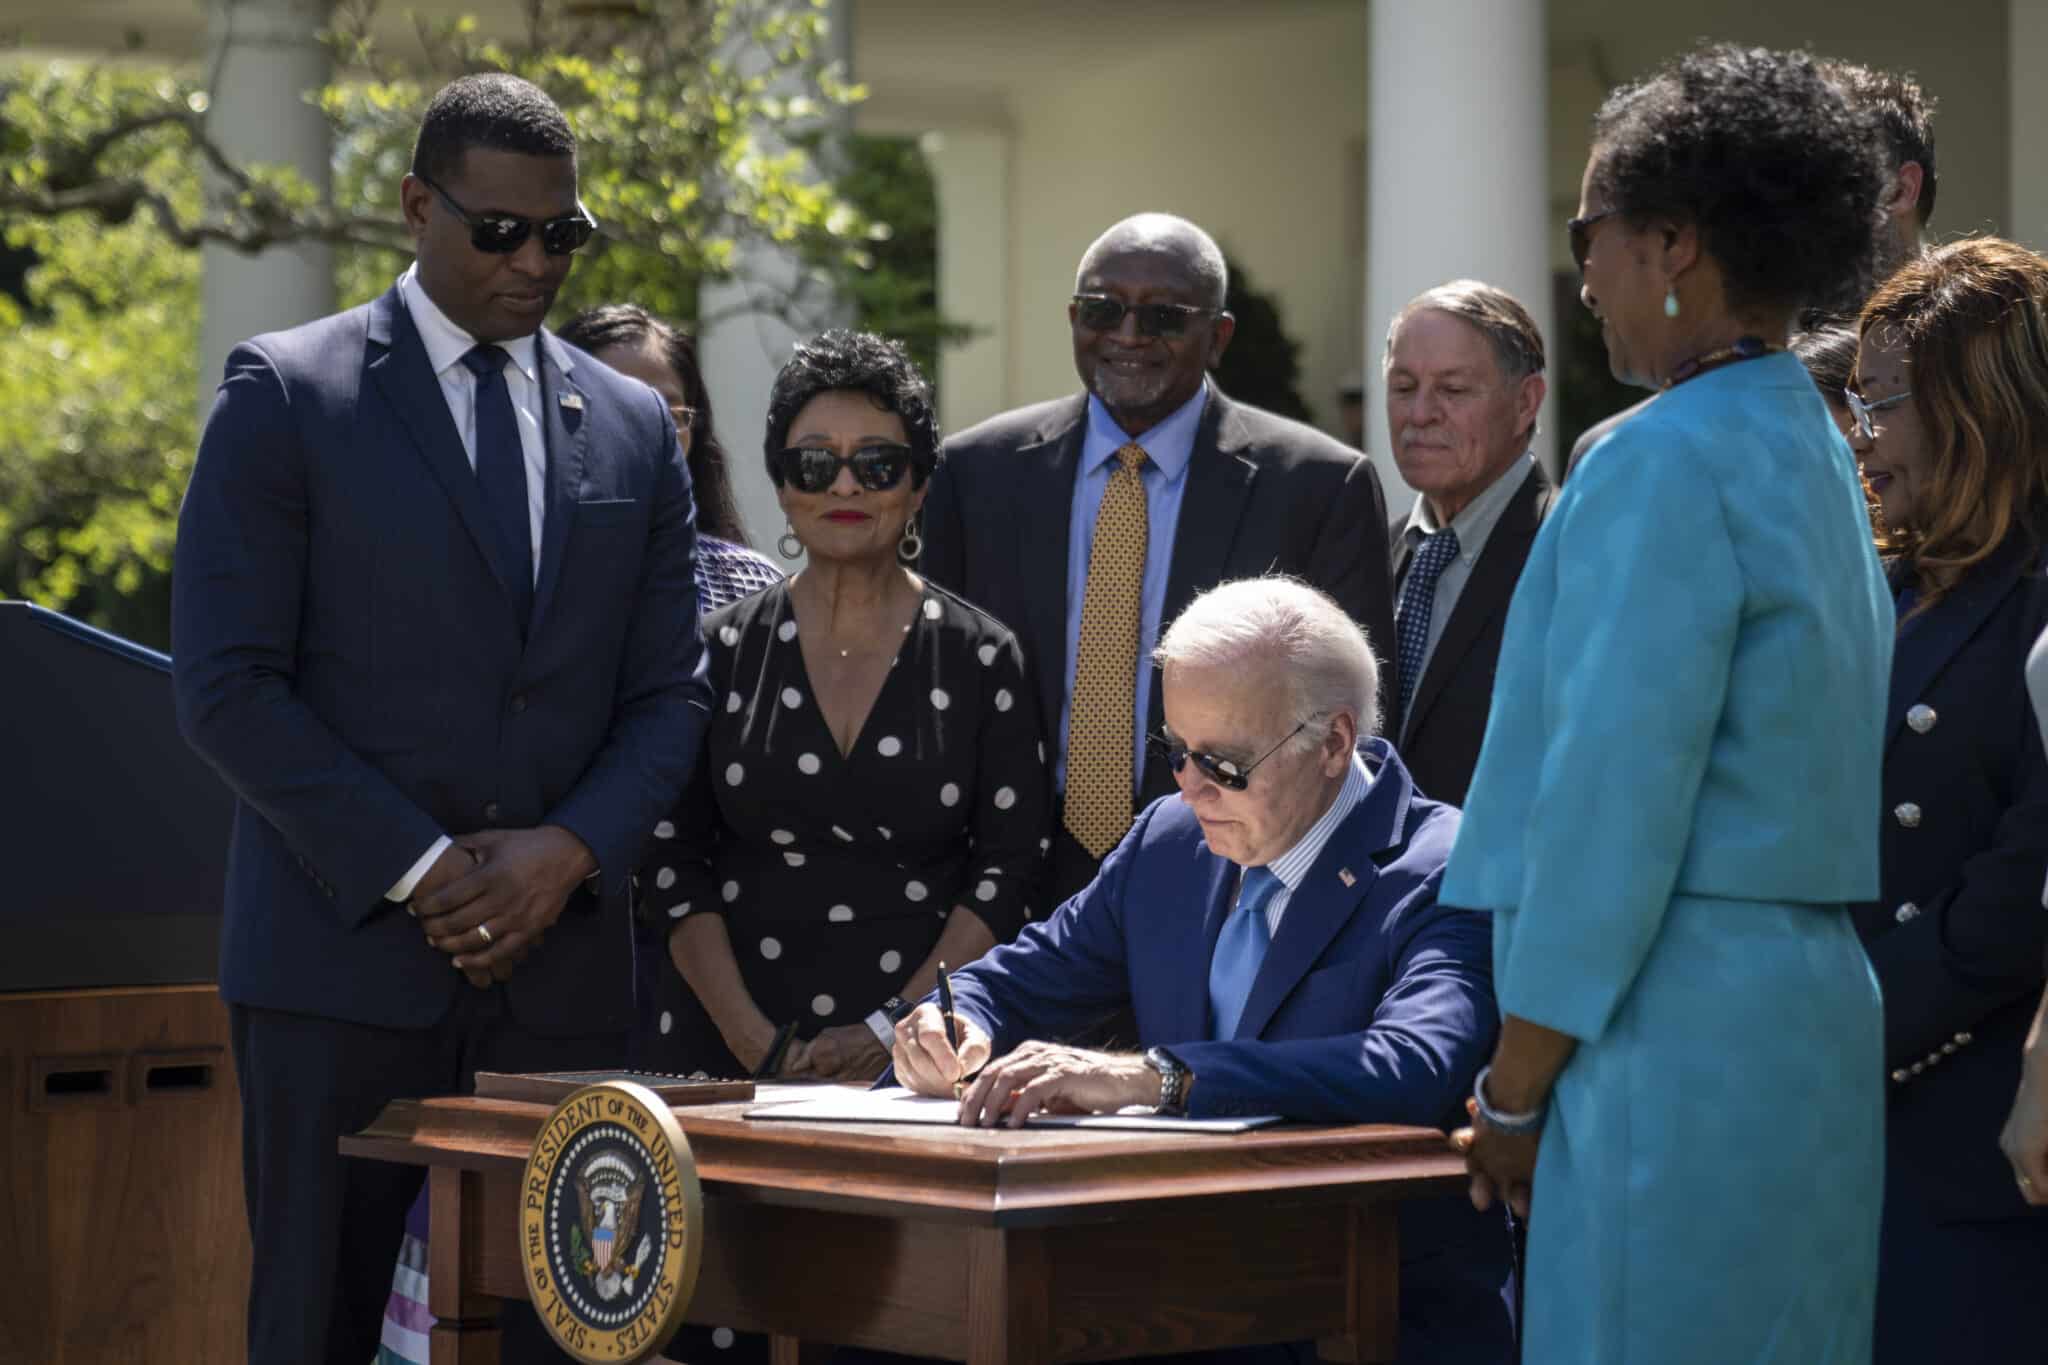 President Joe Biden signing an executive order in the Rose Garden